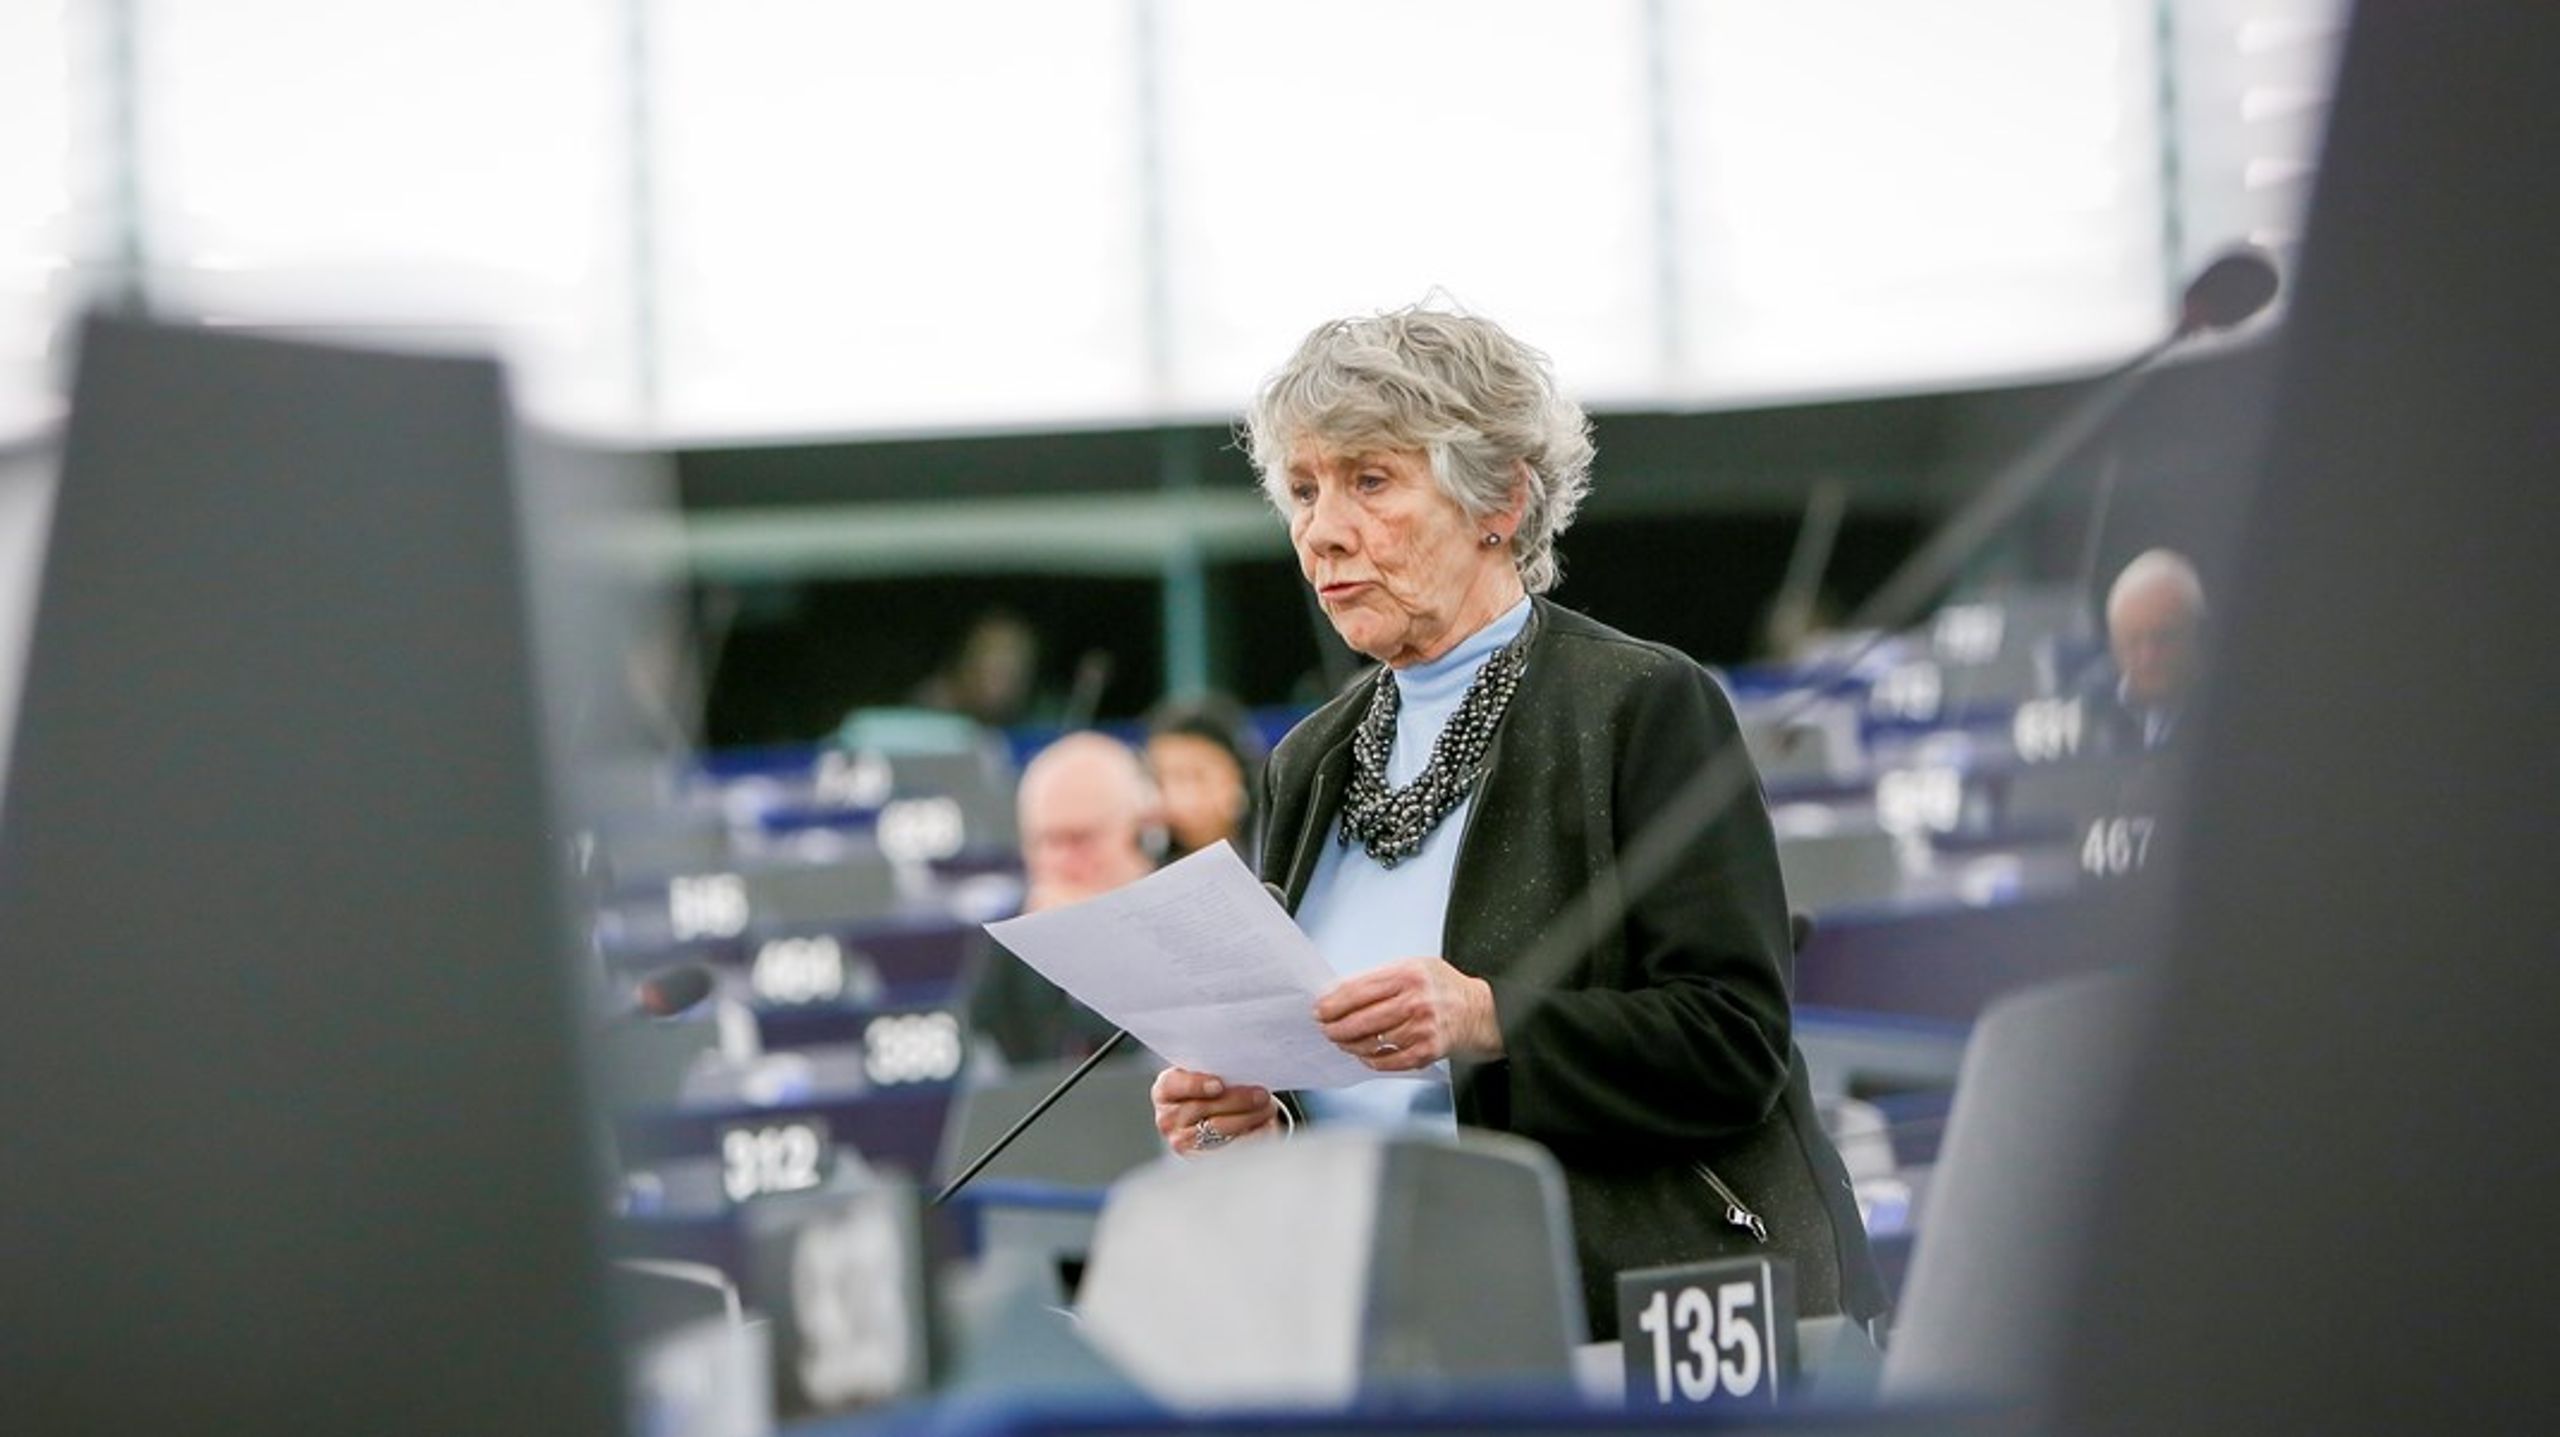 Det er&nbsp;ikke kun lovoverholdelsen der er vakkelvorn. Det kniber også gevaldigt med gennemsigtigheden og adgang til information i EU-Kommissionens arbejde, skriver Margrete Auken.